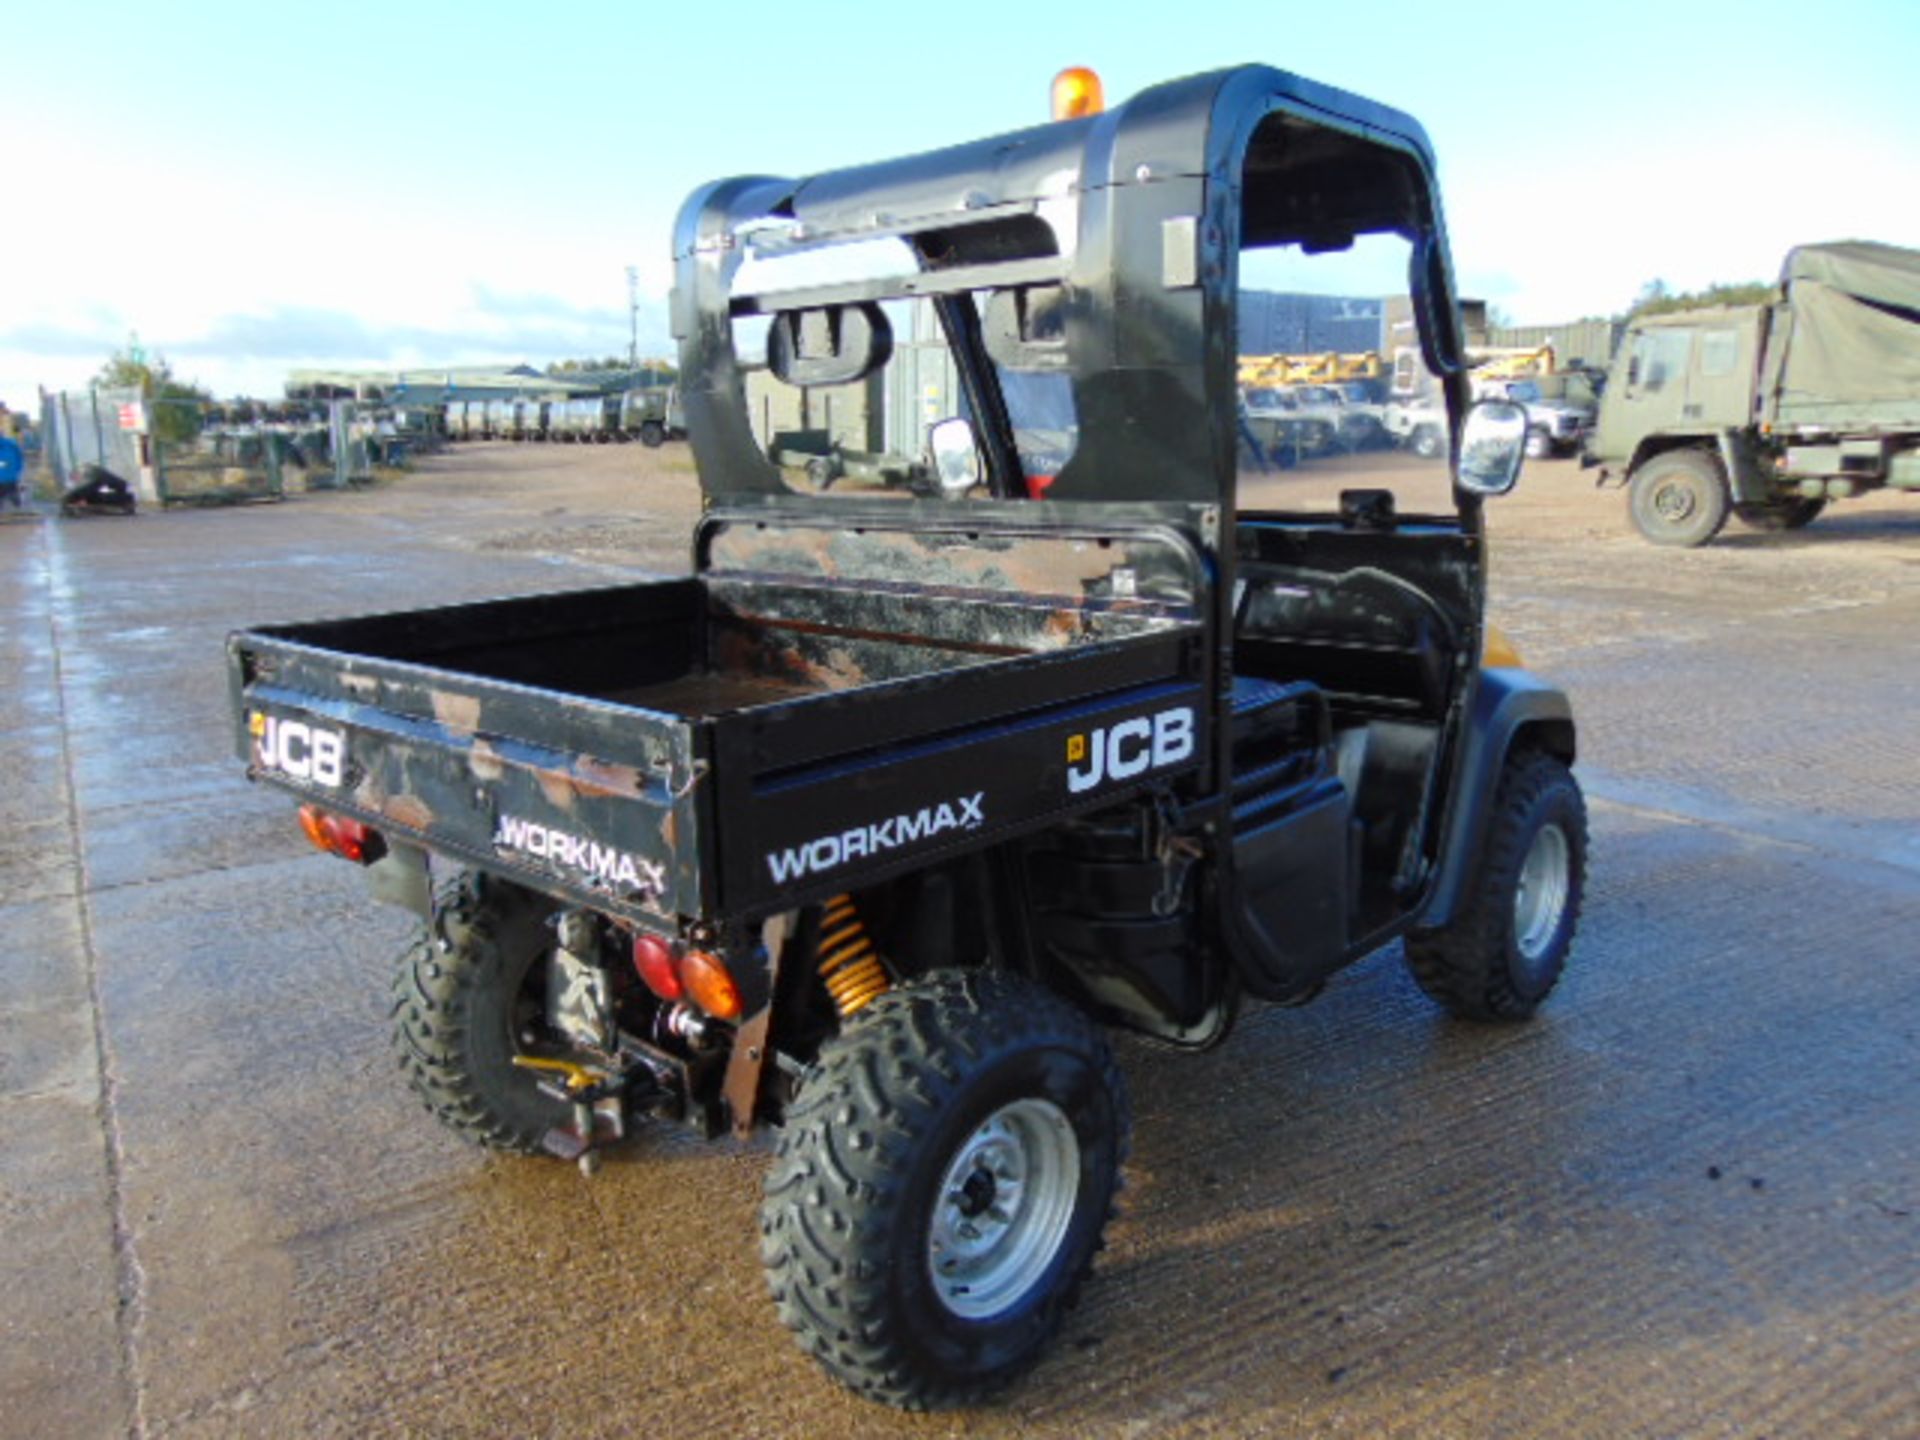 JCB Workmax 800D 4WD Diesel Utility Vehicle UTV - Image 6 of 21